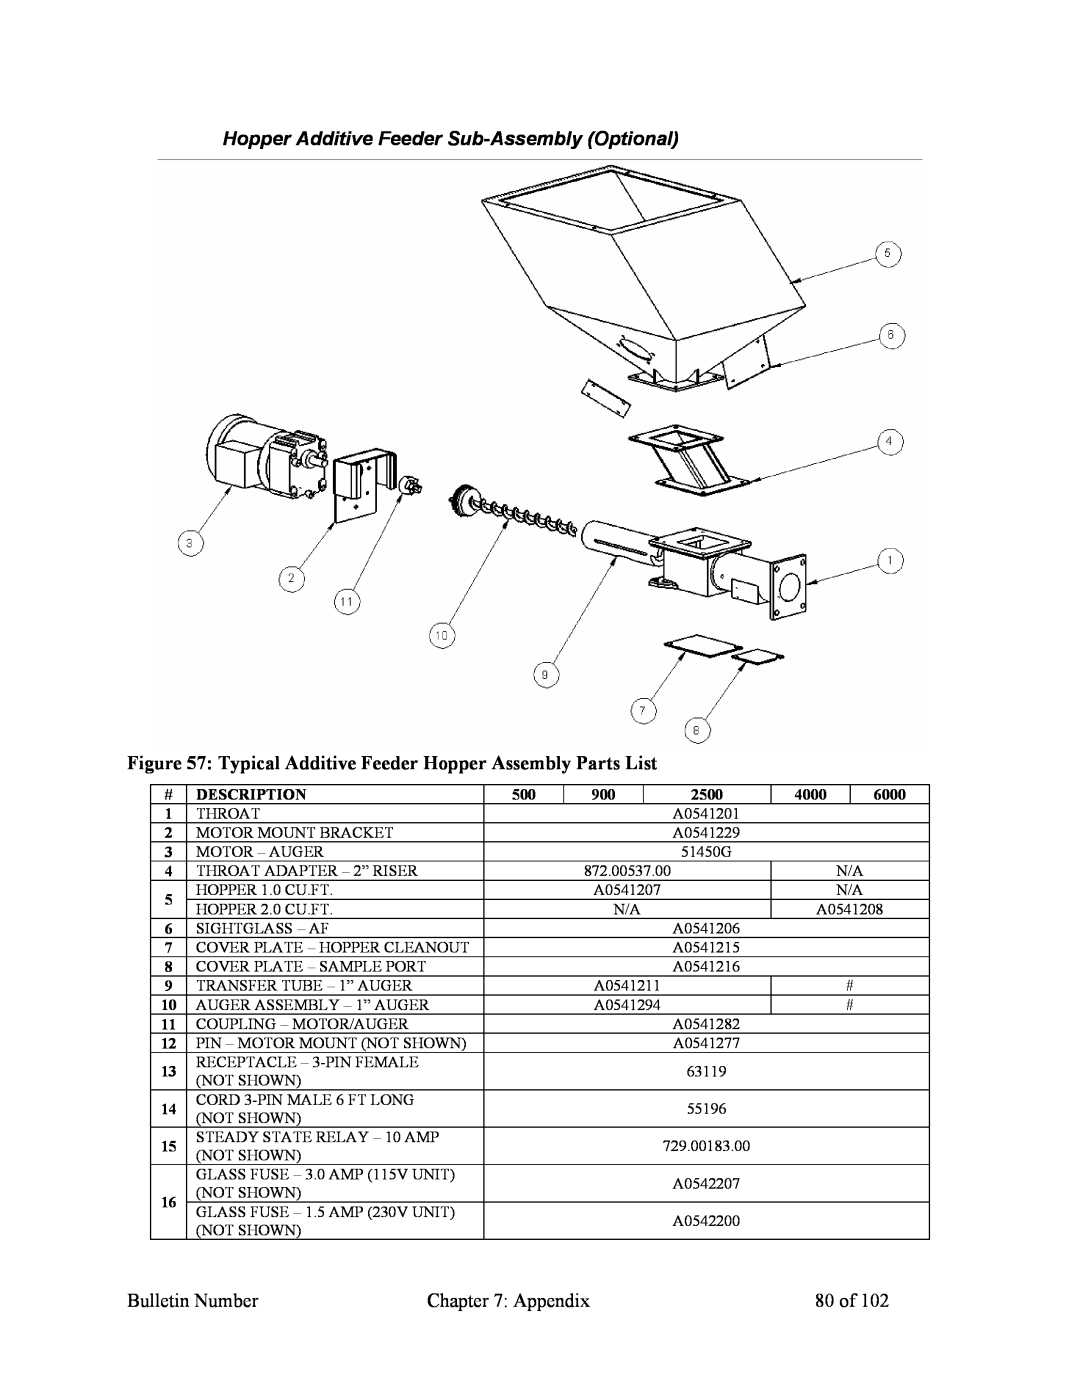 Mitsubishi Electronics 882.00207.00 Hopper Additive Feeder Sub-AssemblyOptional, Bulletin Number, Appendix, 80 of 